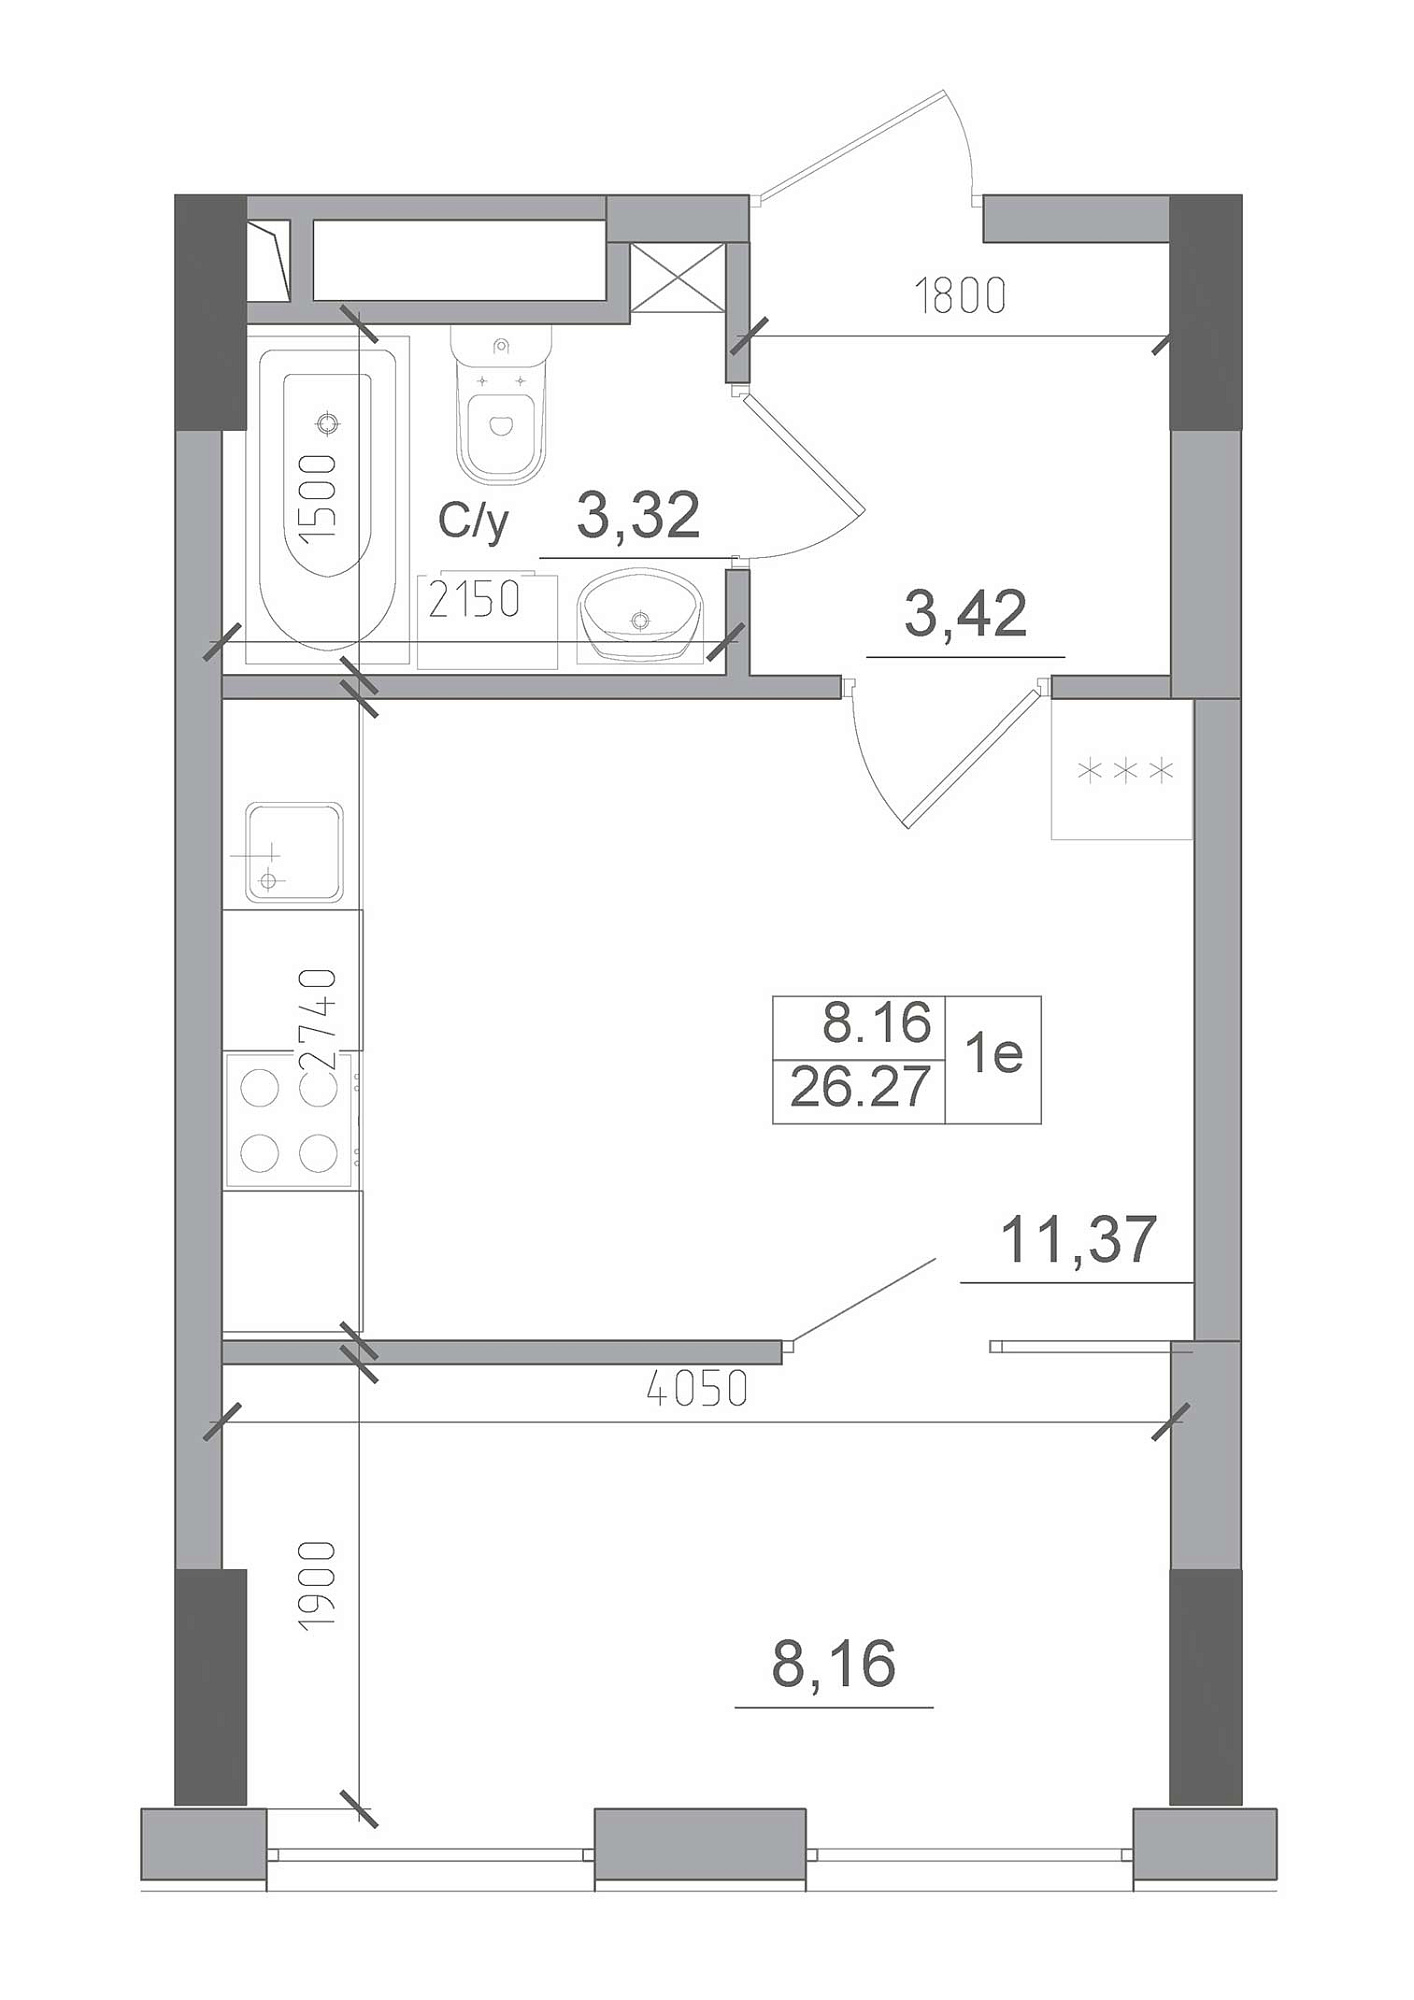 Планировка 1-к квартира площей 26.27м2, AB-22-02/00009.